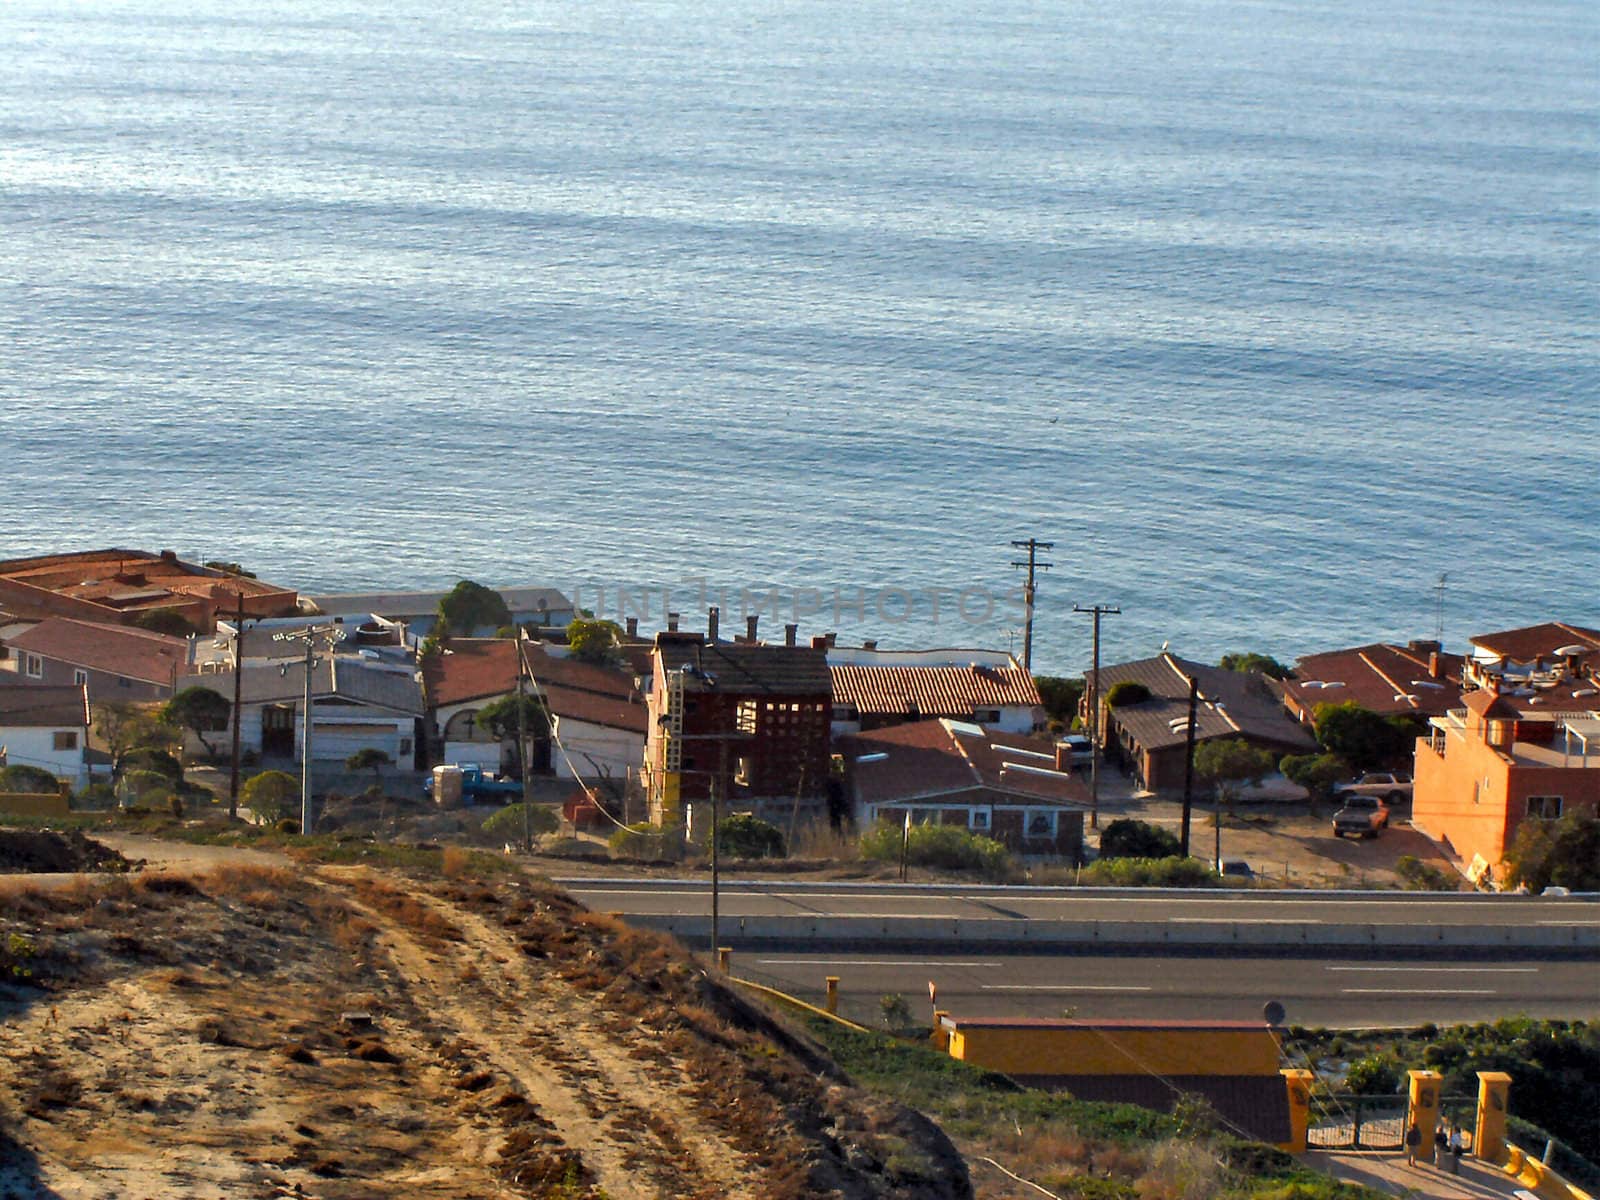 Tijuana Coastline by RefocusPhoto